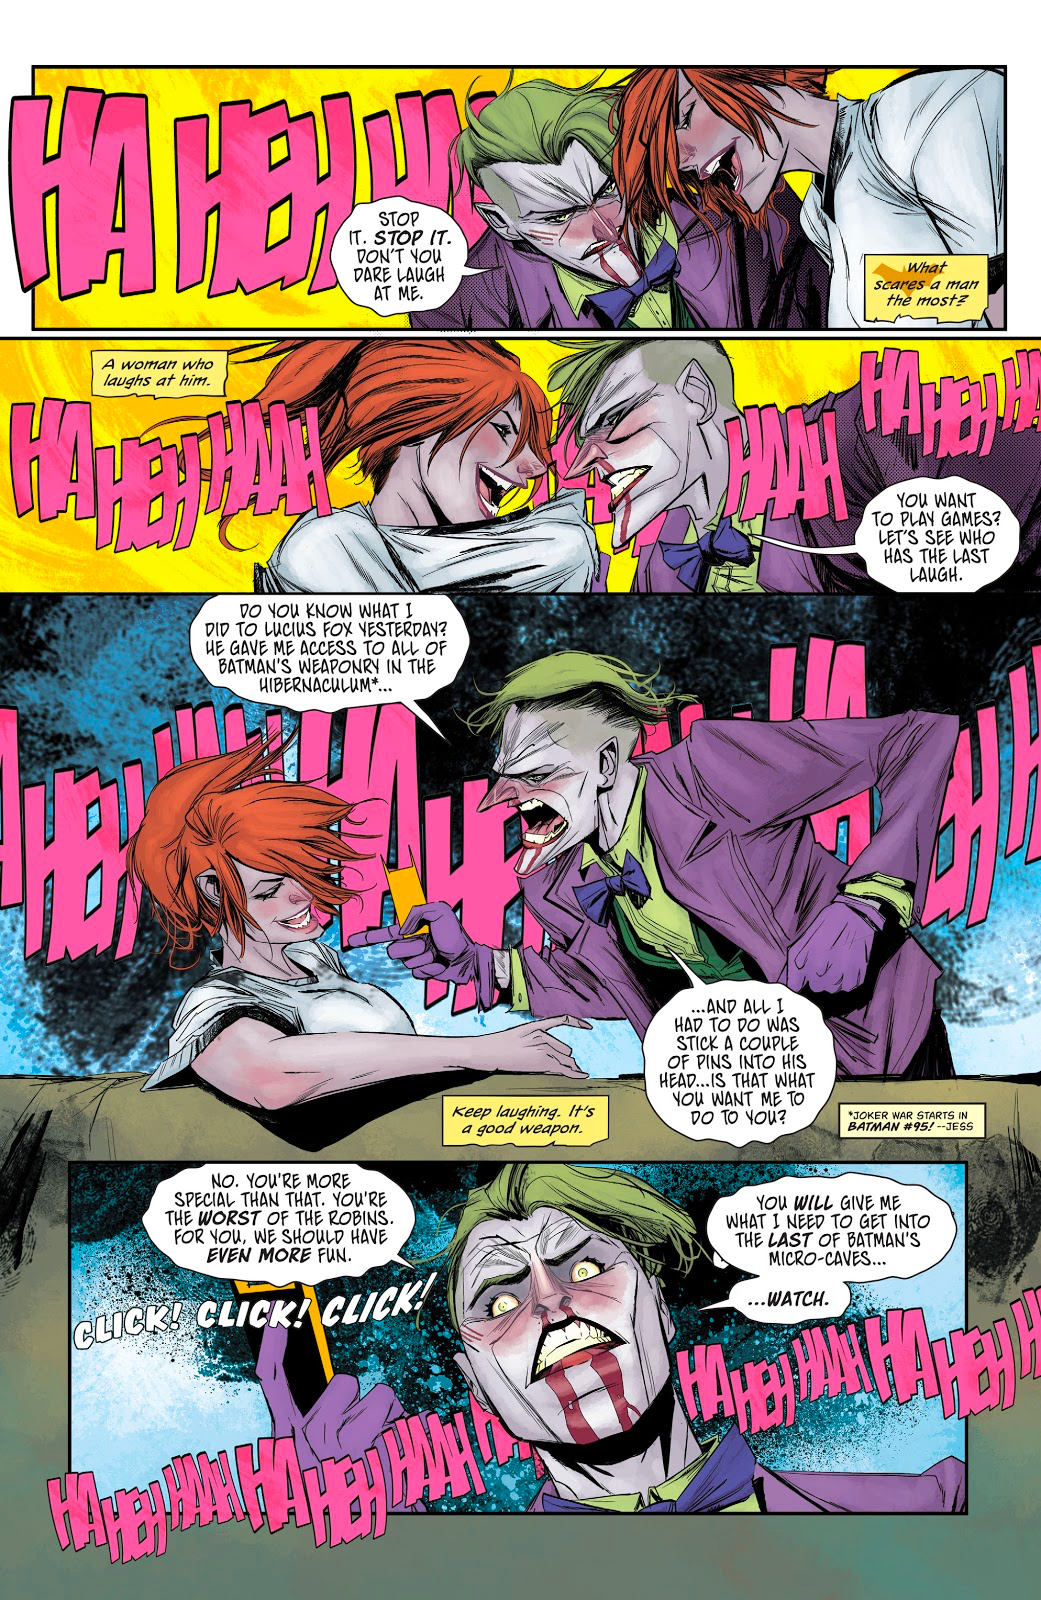 Batgirl Just Gained an Upper Hand in DC’s Joker War